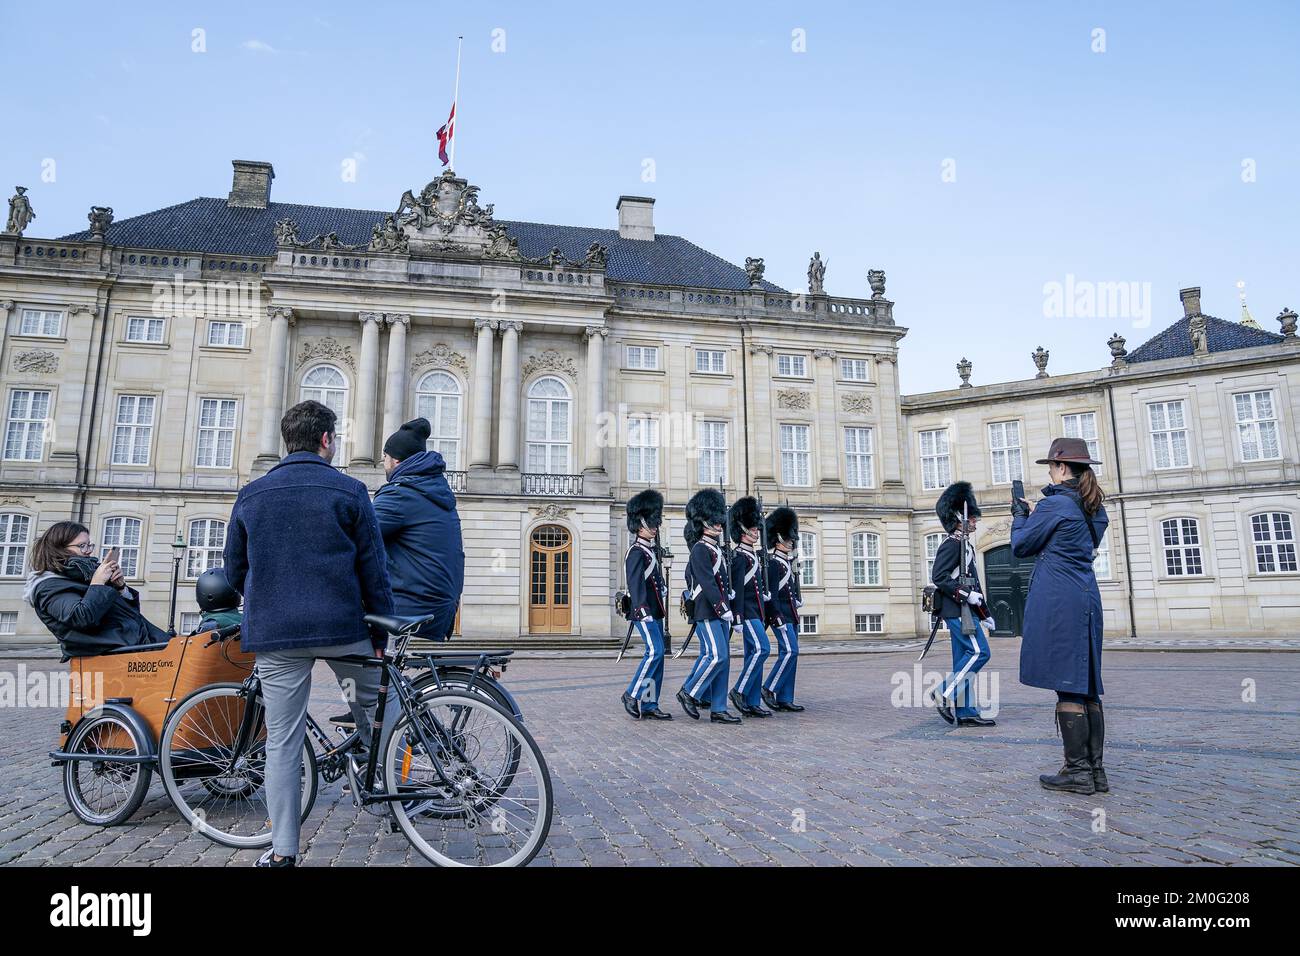 Le bandiere sono volate a mezza altezza al Palazzo di Amalienborg a Copenaghen, sabato 17 aprile 2021. La regina Margrethe ha deciso di battere bandiere a mezza altezza al castello di Amalienborg, in memoria del principe Filippo, il duca di Edimburgo, il giorno del suo funerale. I funerali si svolgeranno dalla Cappella di San Giorgio al Castello di Windsor. Il principe Filippo, nato Principe di Grecia e Danimarca, morì il 9th aprile. Il principe Filippo aveva 99 anni (Foto: Claus Bech/Ritzau Scanpix) Foto Stock